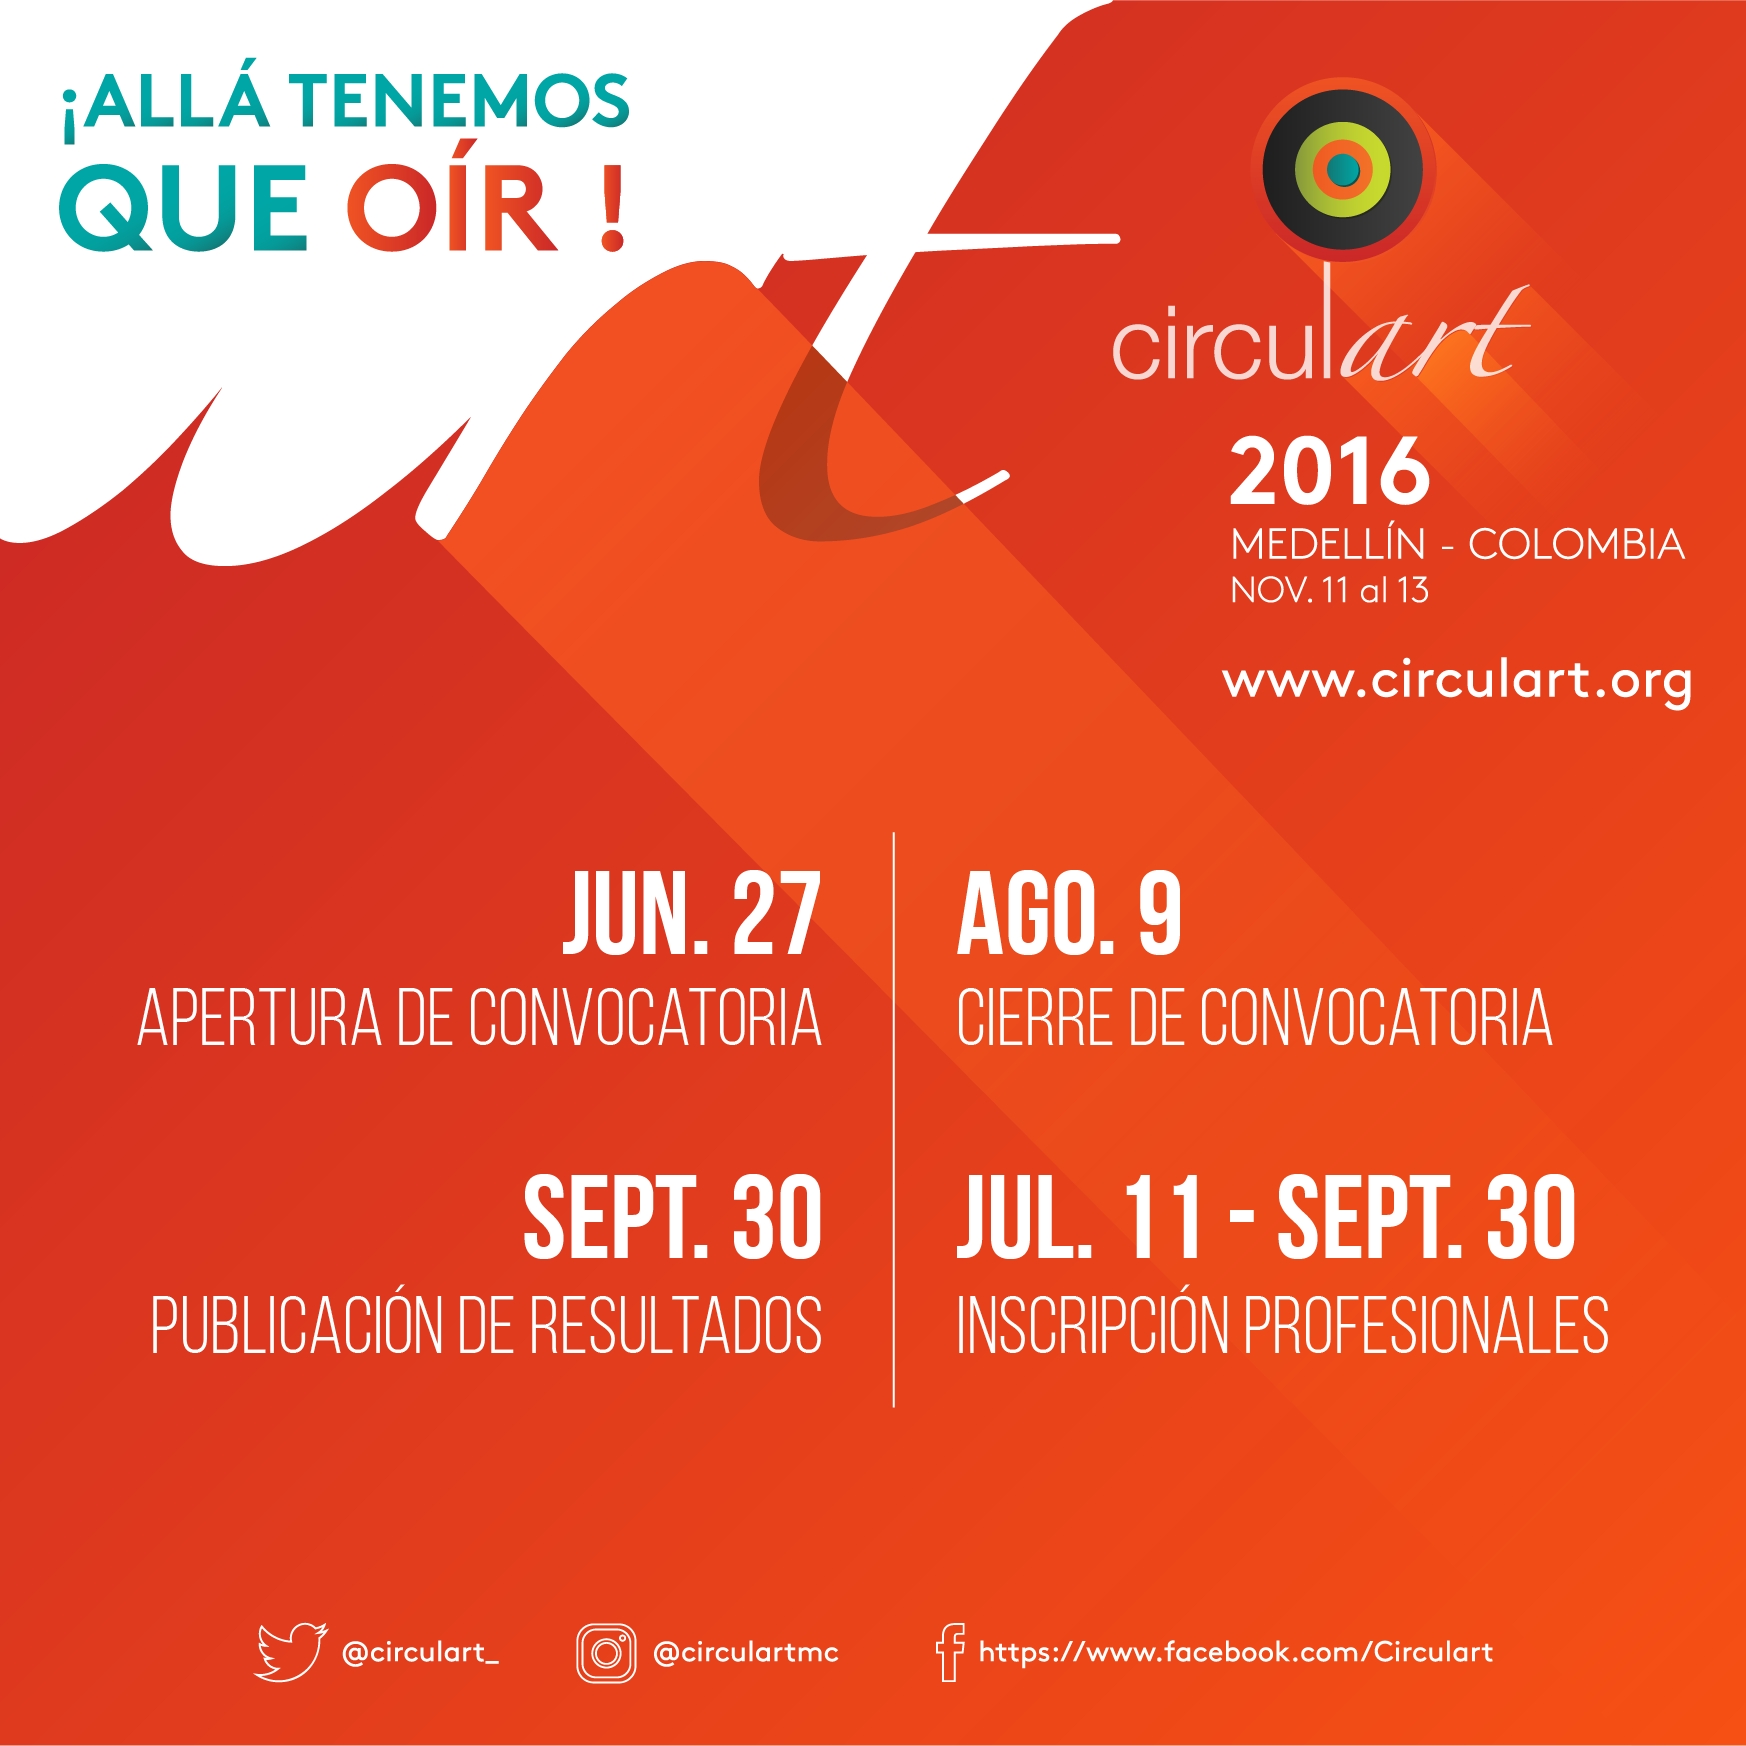 Circulart 2016: cierre de convocatoria para artistas el 9 de agosto